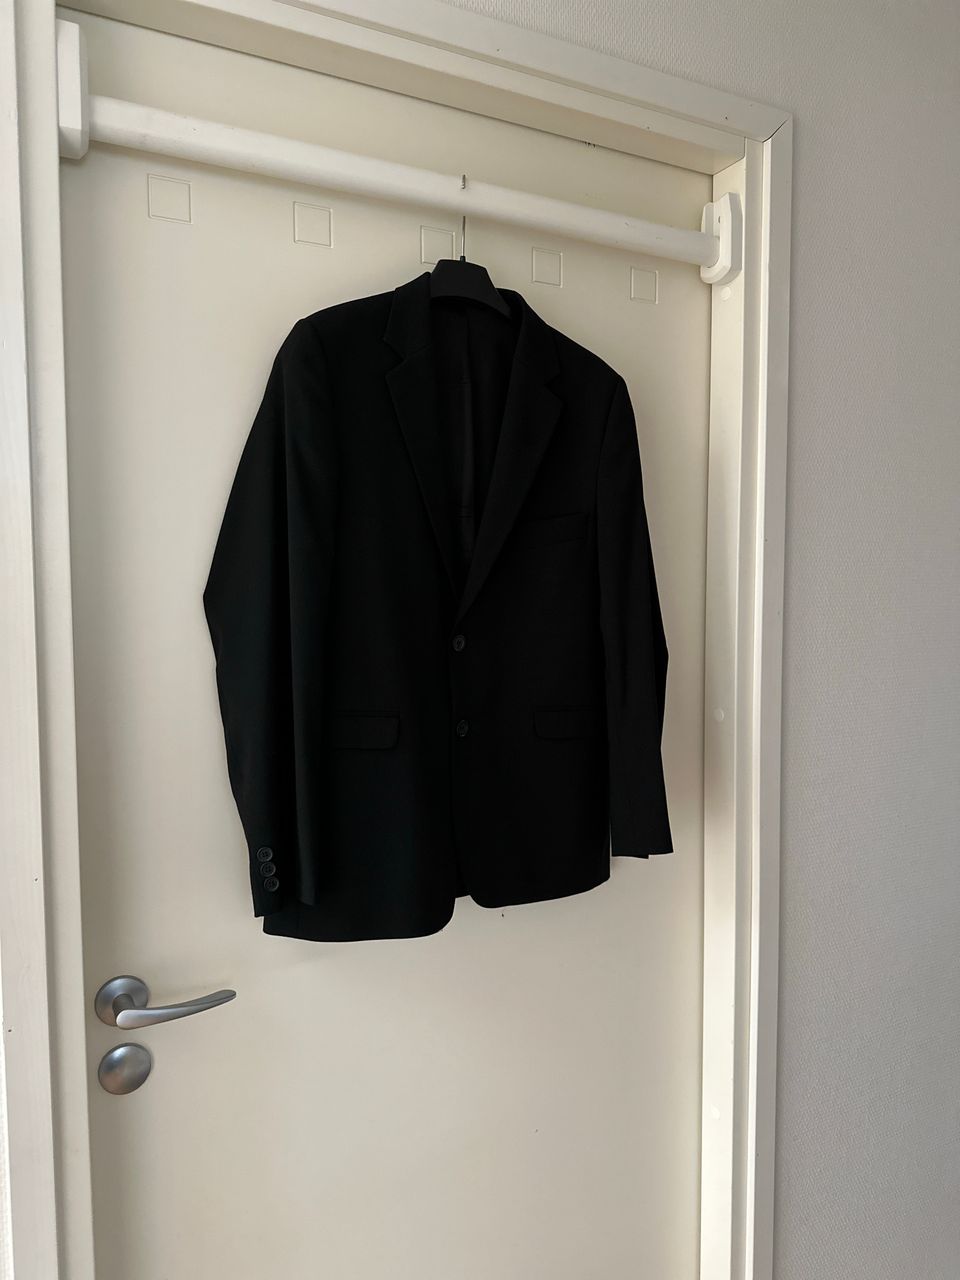 Musta puvun takki 176cm kokoiselle!